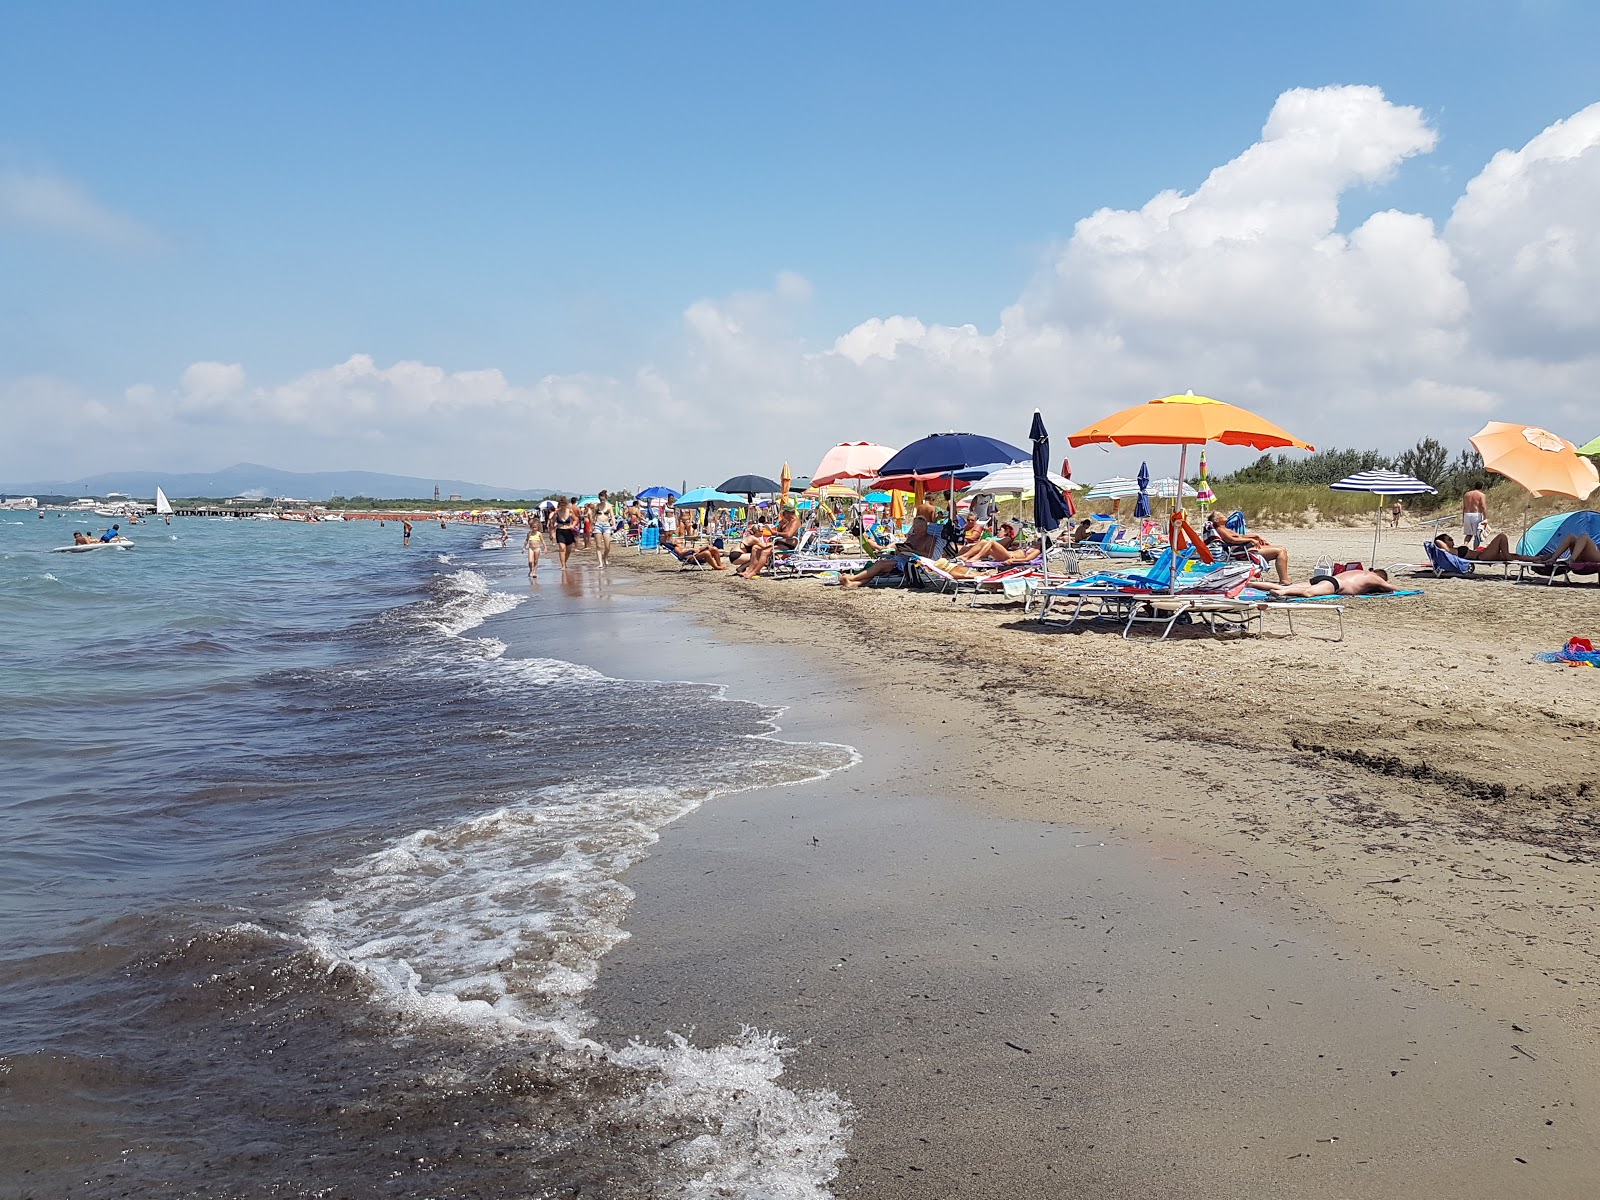 Mazzanta beach'in fotoğrafı kahverengi kum yüzey ile